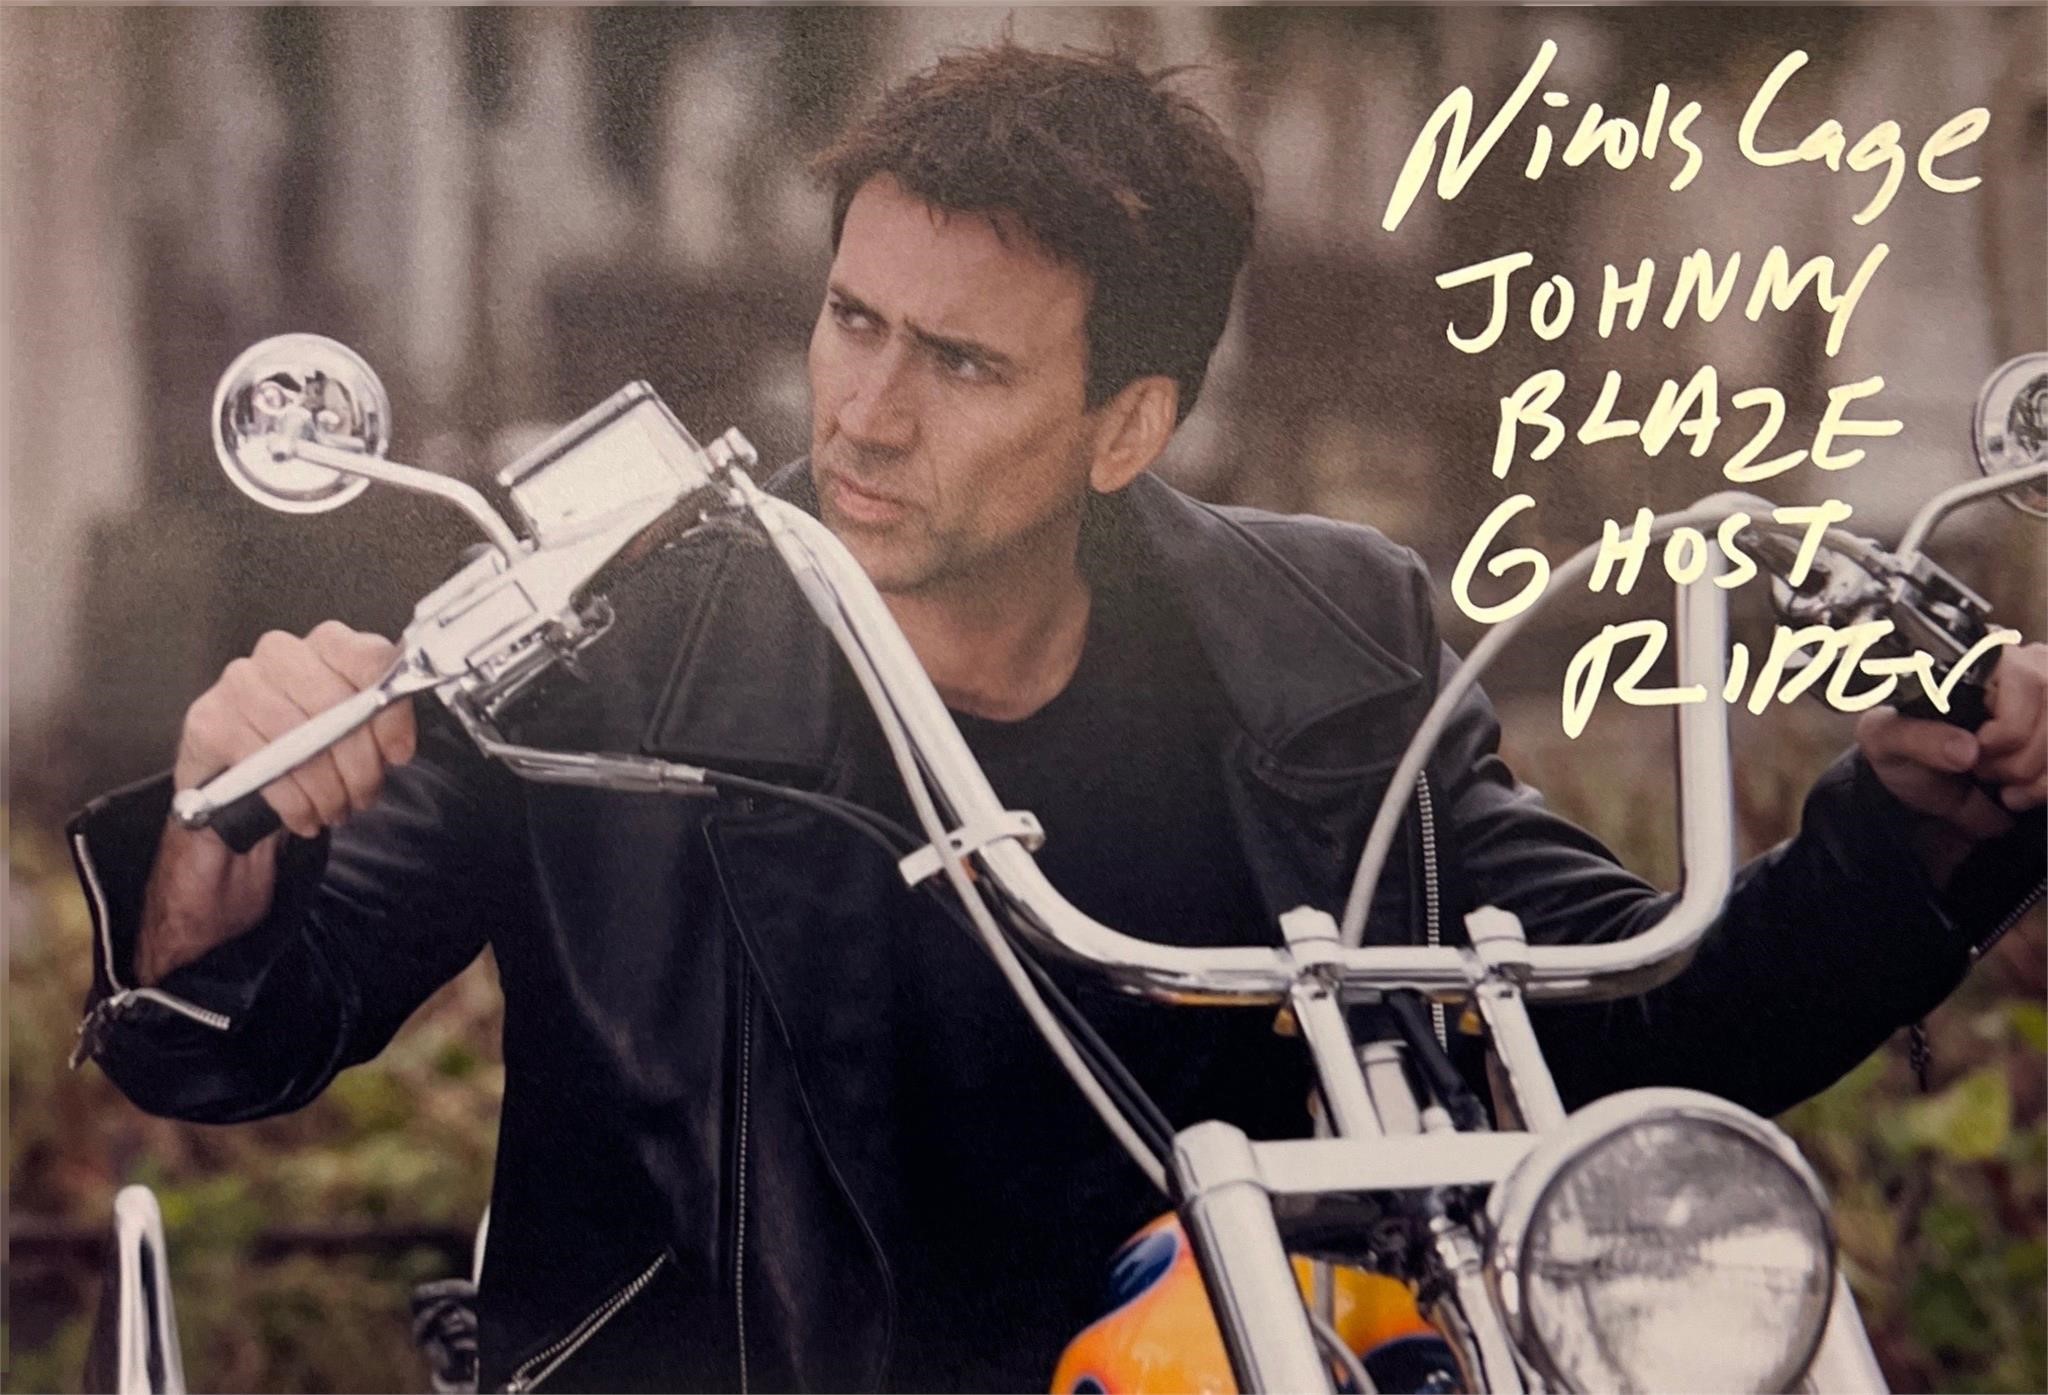 Autograph COA Ghost Rider Photo